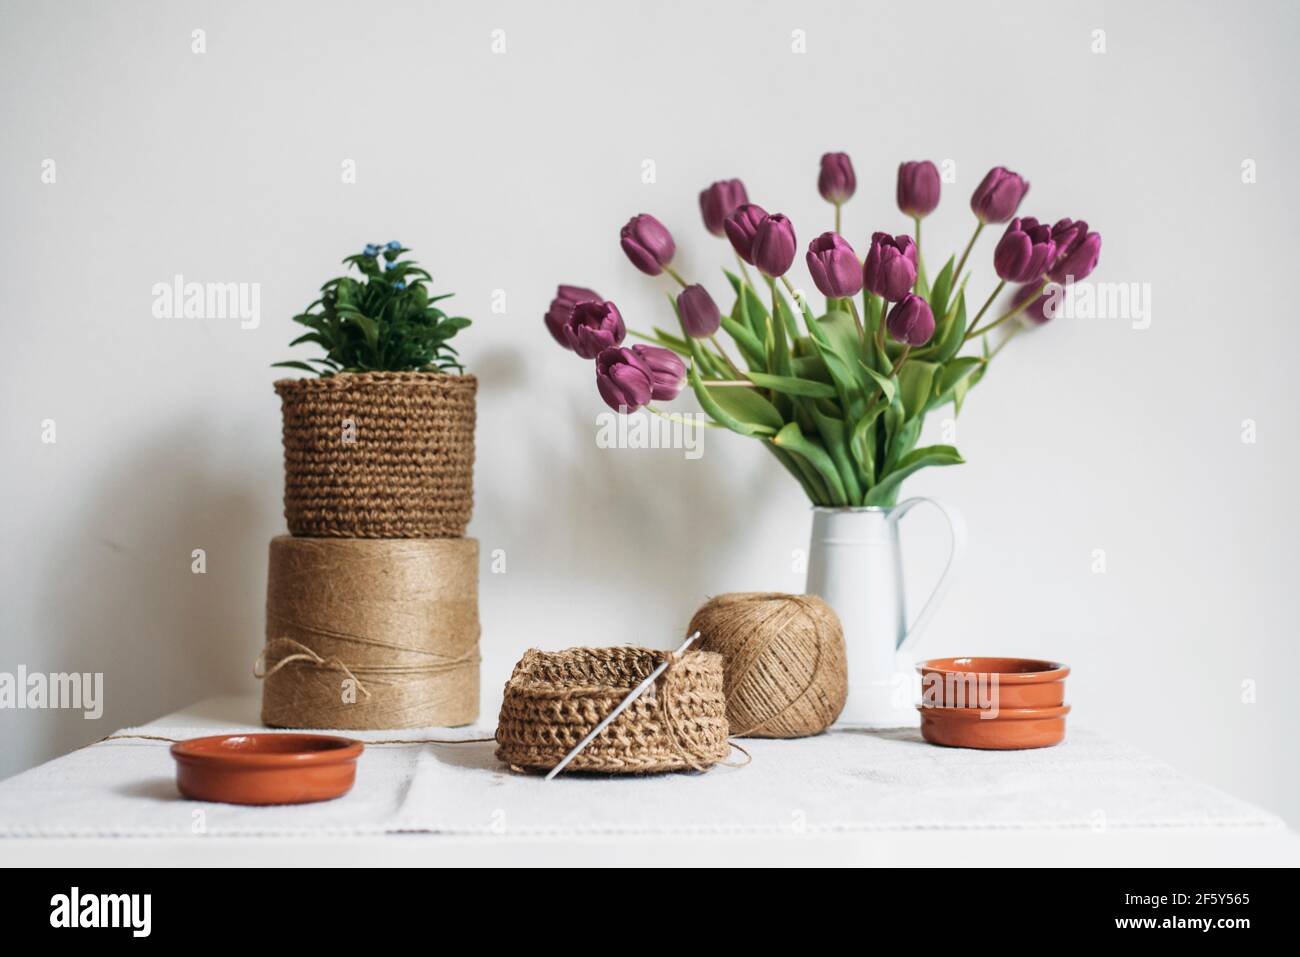 Stillleben mit halbfertigen Stricken, Knäueln, Tulpen und Zimmerpflanzen Stockfoto